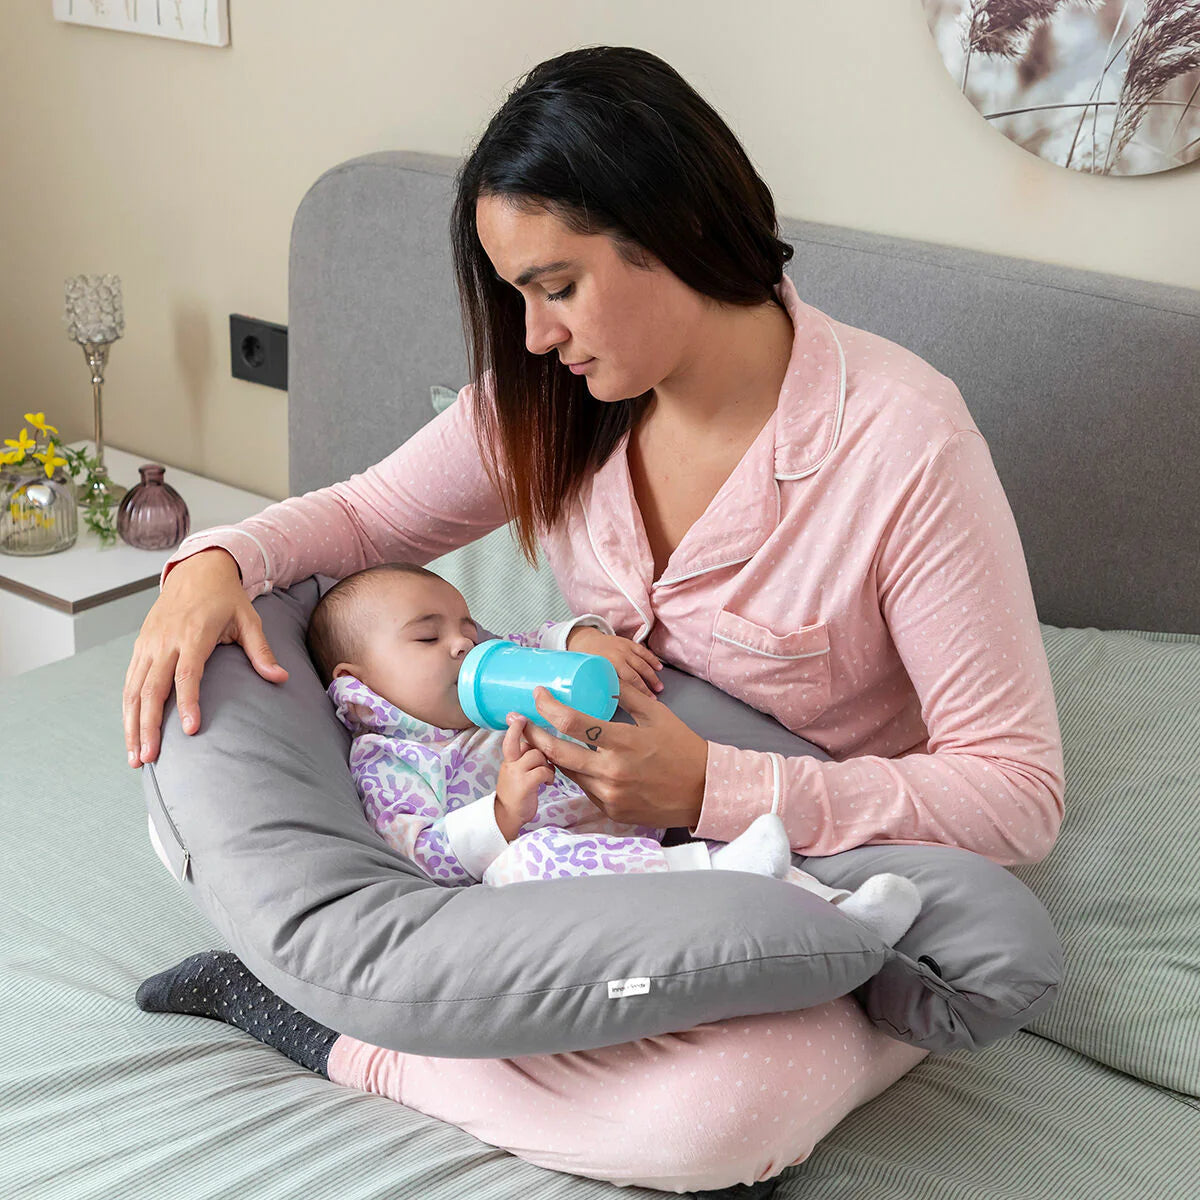 Multifunction Breastfeeding Pillow